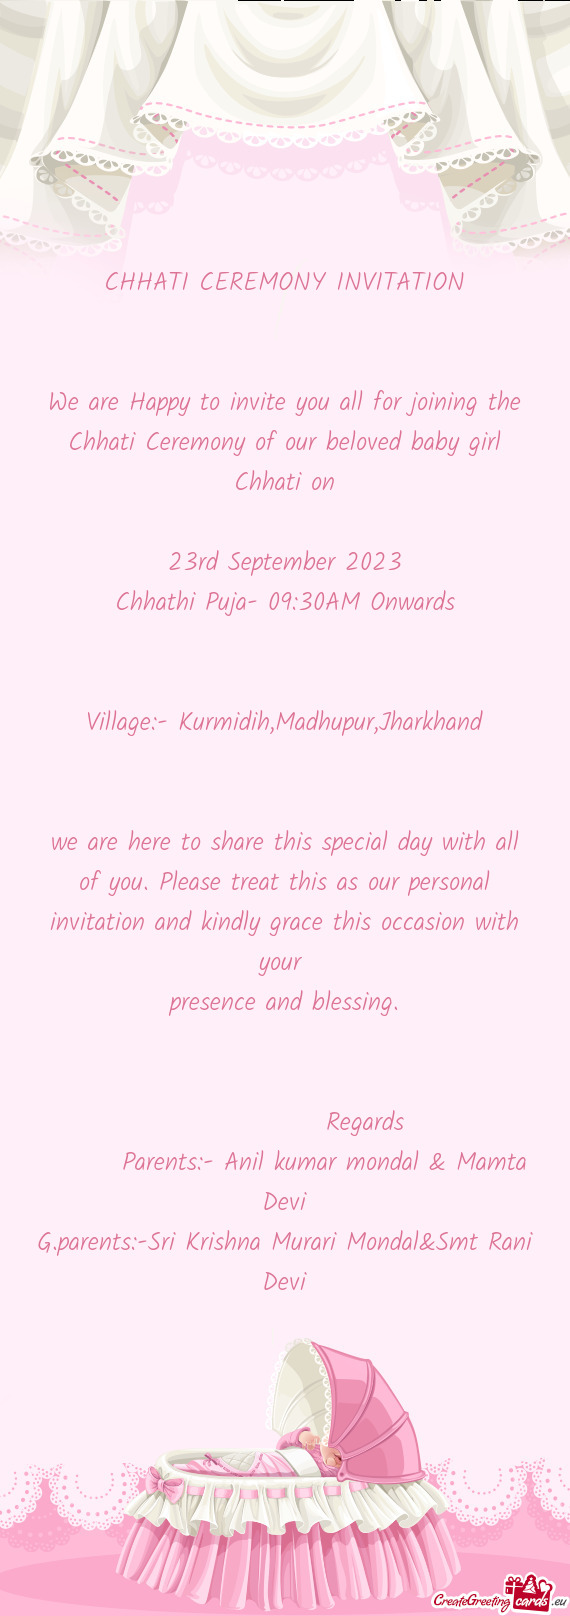 Chhathi Puja- 09:30AM Onwards